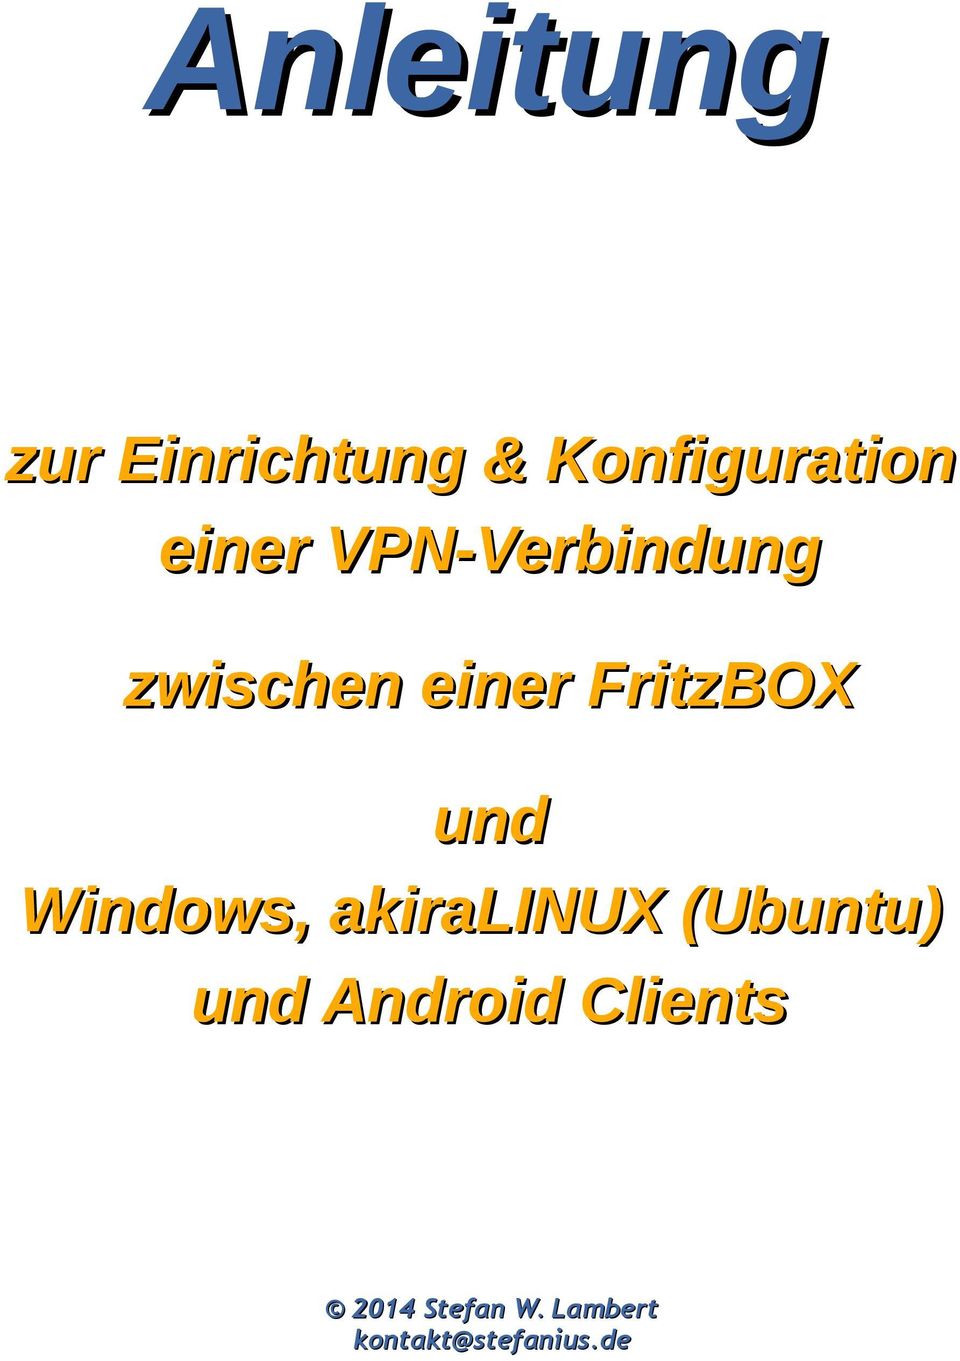 und Windows, akiralinux (Ubuntu) und Android